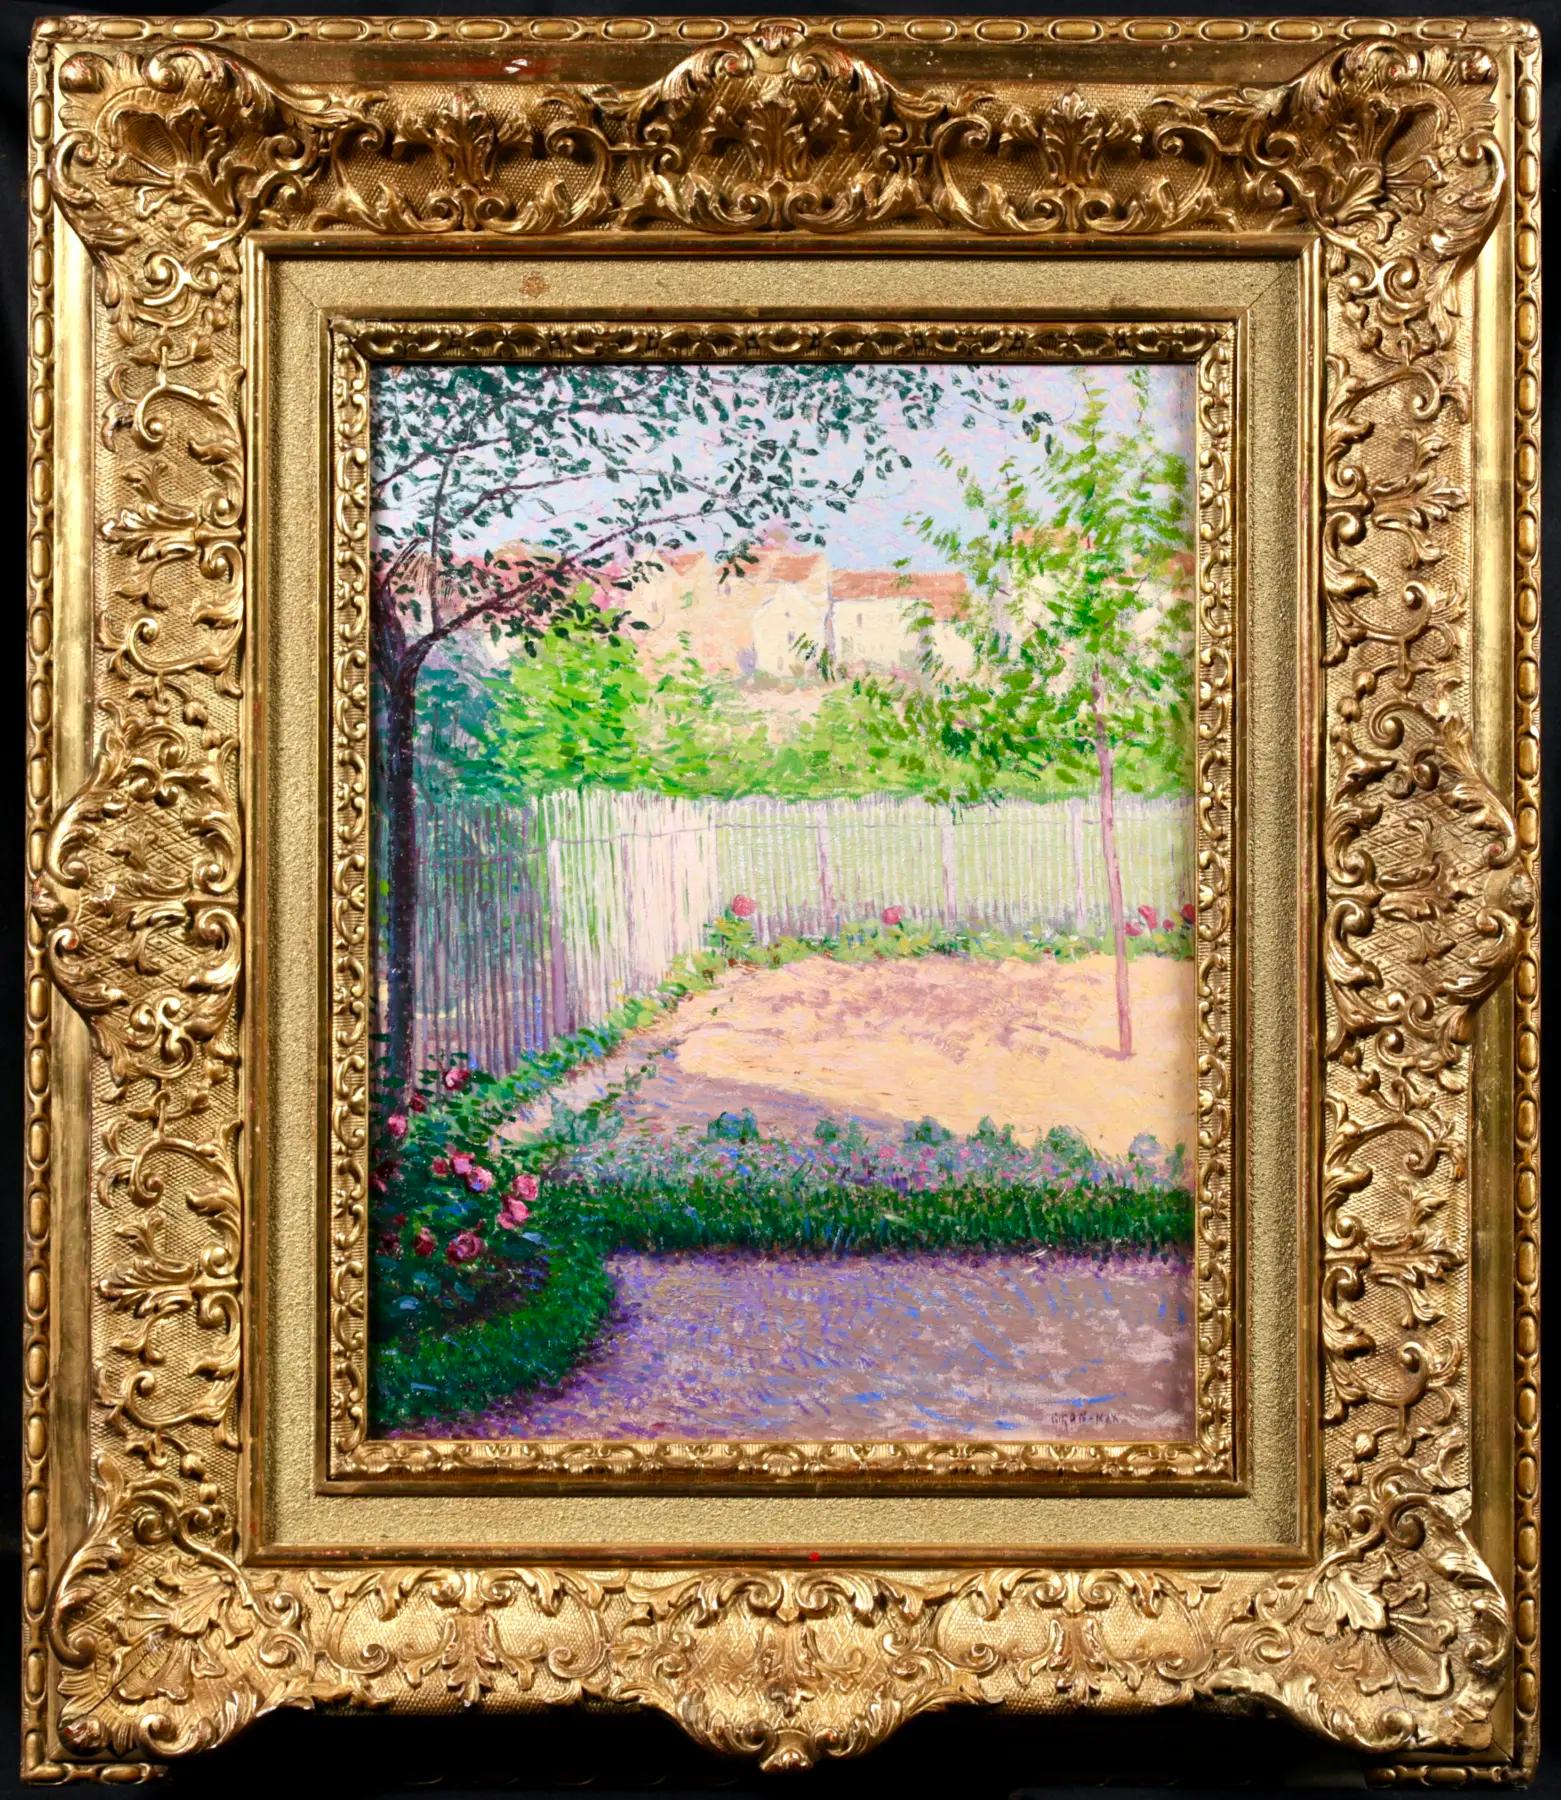 Signiertes impressionistisches Öl auf Tafel Landschaft circa 1900 von französischem Maler Leon Giran-Max. Das Werk zeigt einen eingezäunten Garten mit rosafarbenen Blumen, die sich vom grünen Laub der Blumenbeete abheben. Jenseits des Zauns sind die